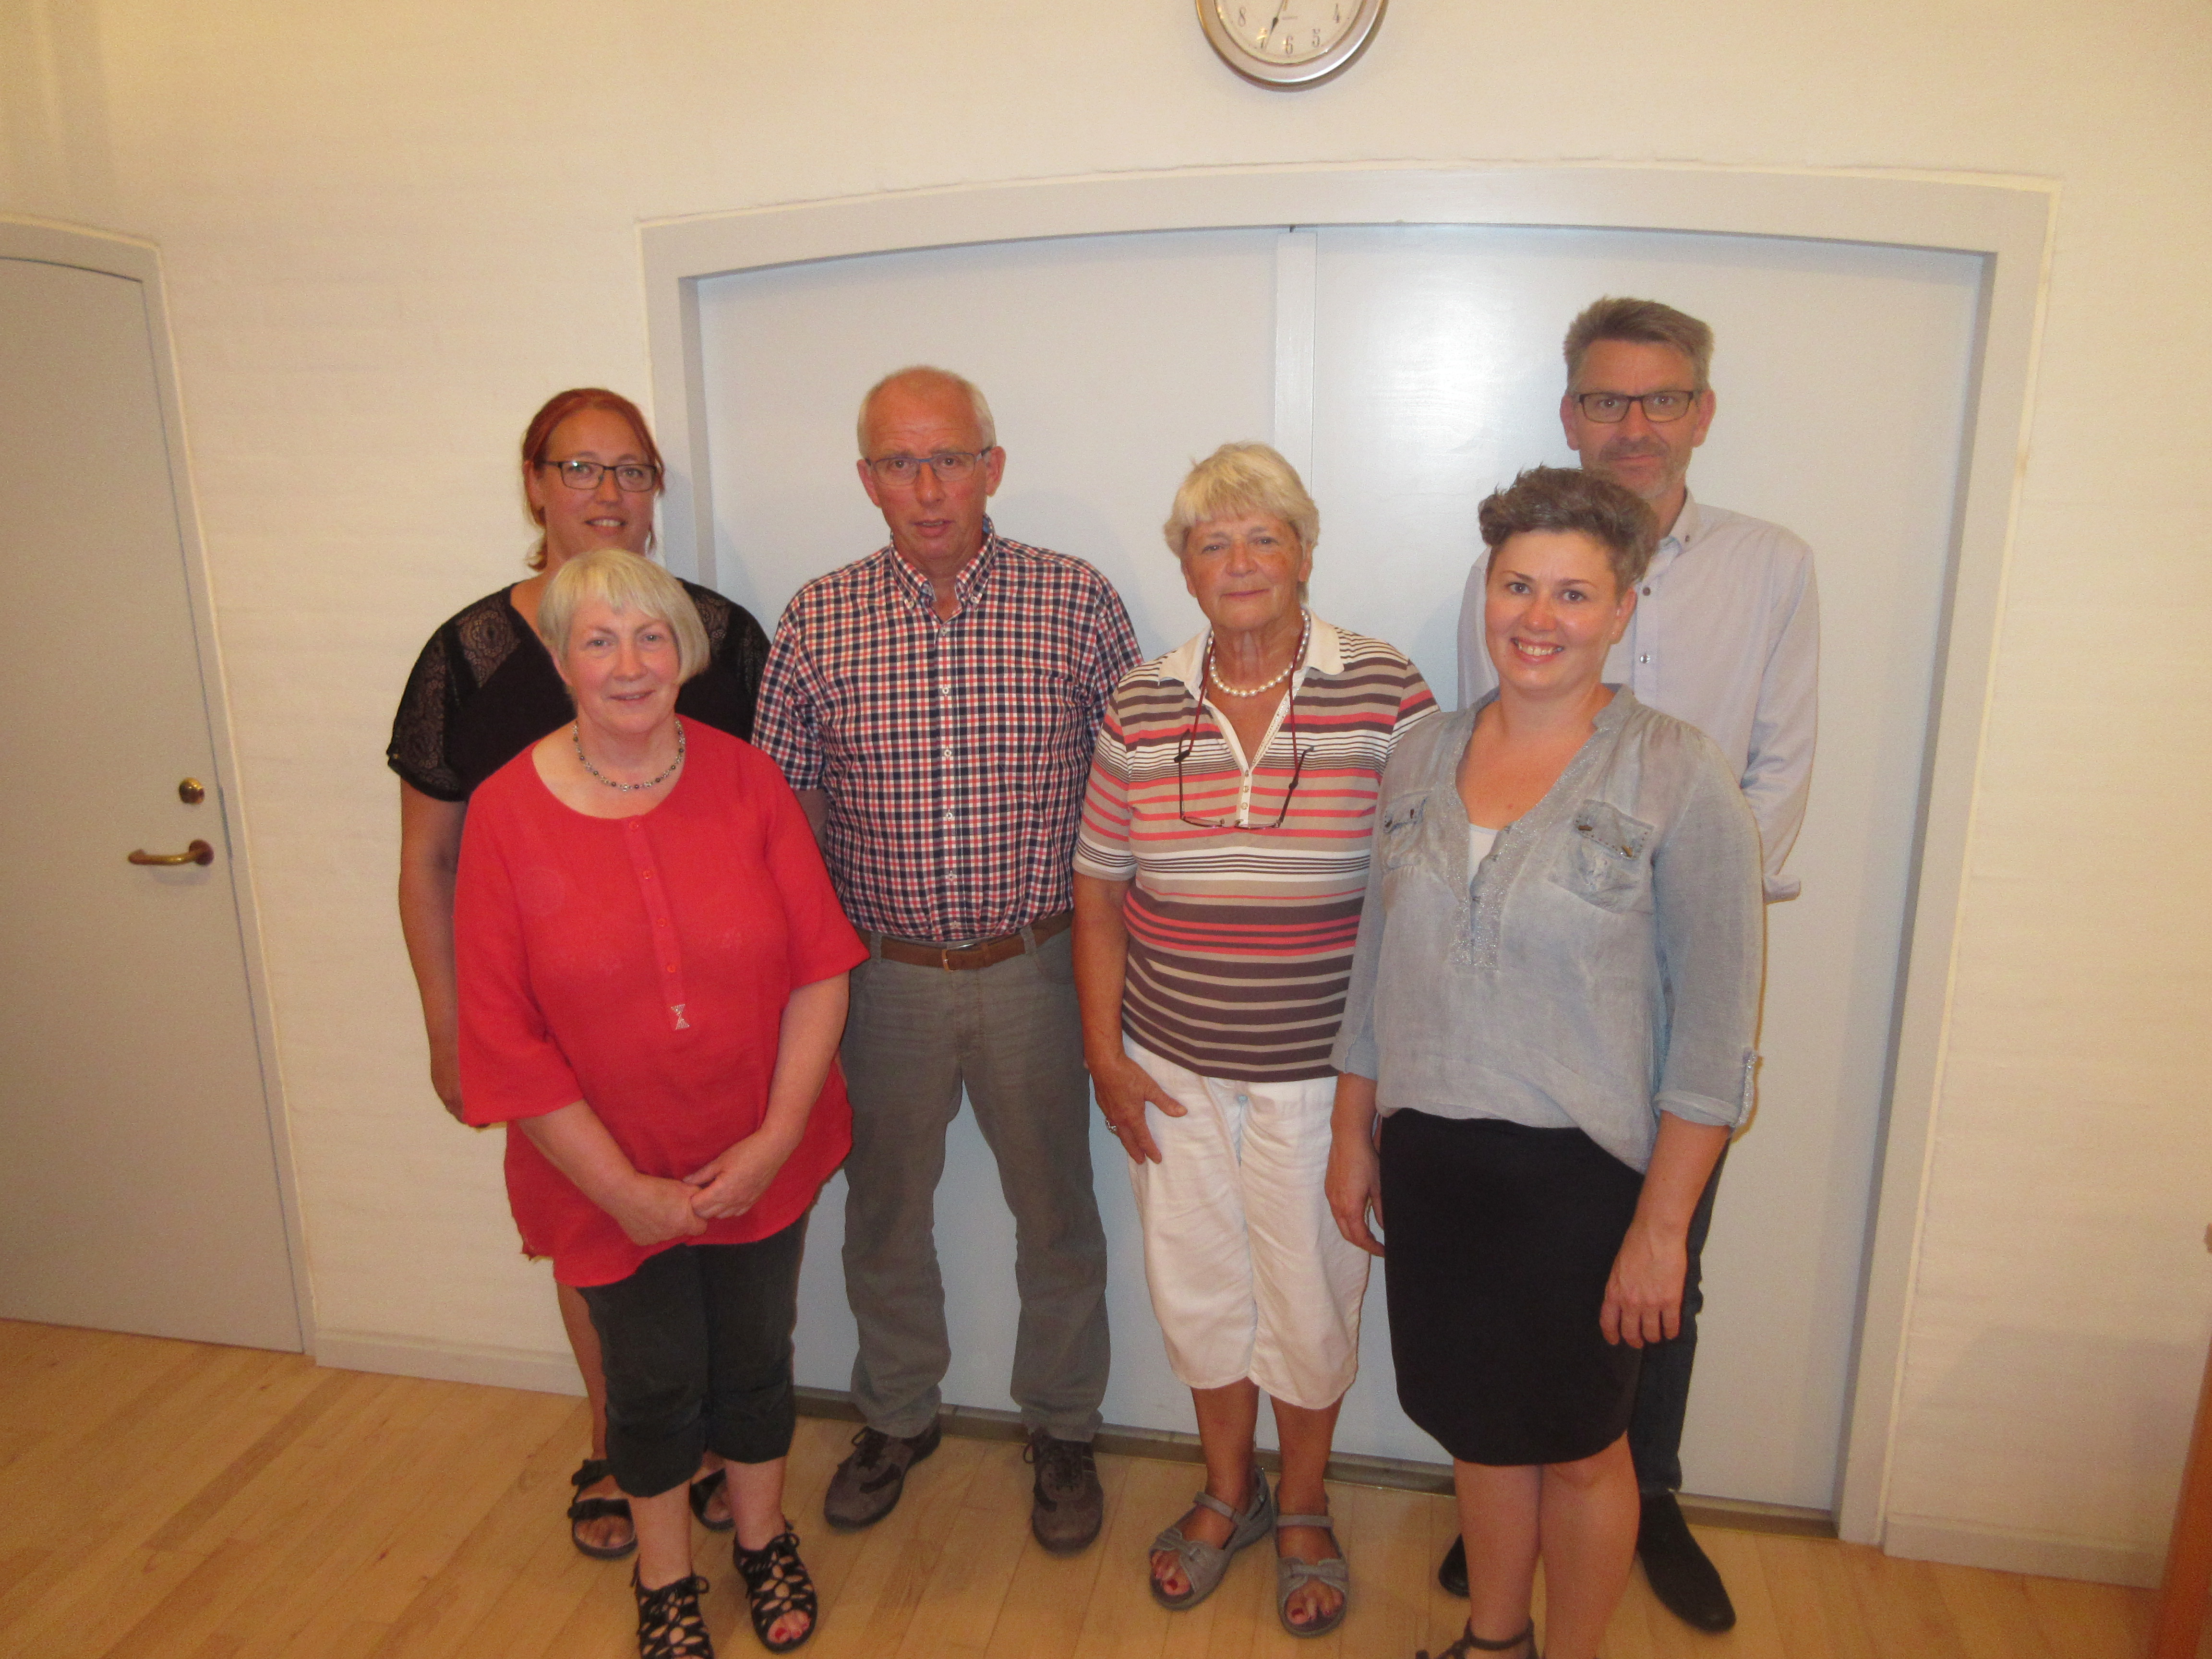 menighedsrådsvalget 2016 i Skodborg. Opstillingsmødet. Der var opstillet 8 kandidater, 6 blev valgt til listen, øvrige er stedfortrædere.